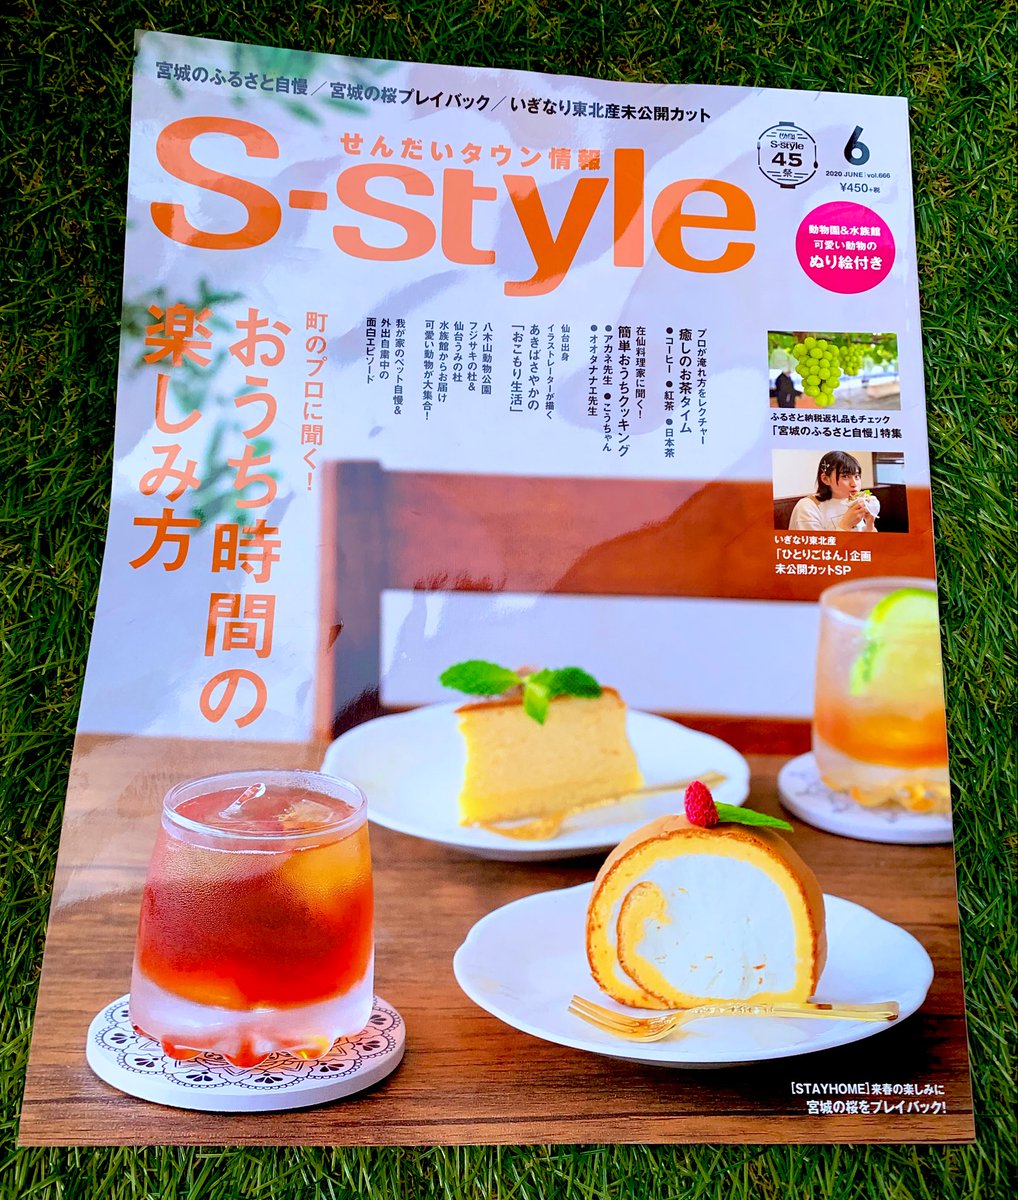 本日発売の「せんだいタウン情報S-style」にて、おうち時間の楽しみ方のマンガ描かせていただきました!
ブログに描いた自宅生活ネタ+αです✨
地元の雑誌に載るのは嬉しいー!
#Sstyle 